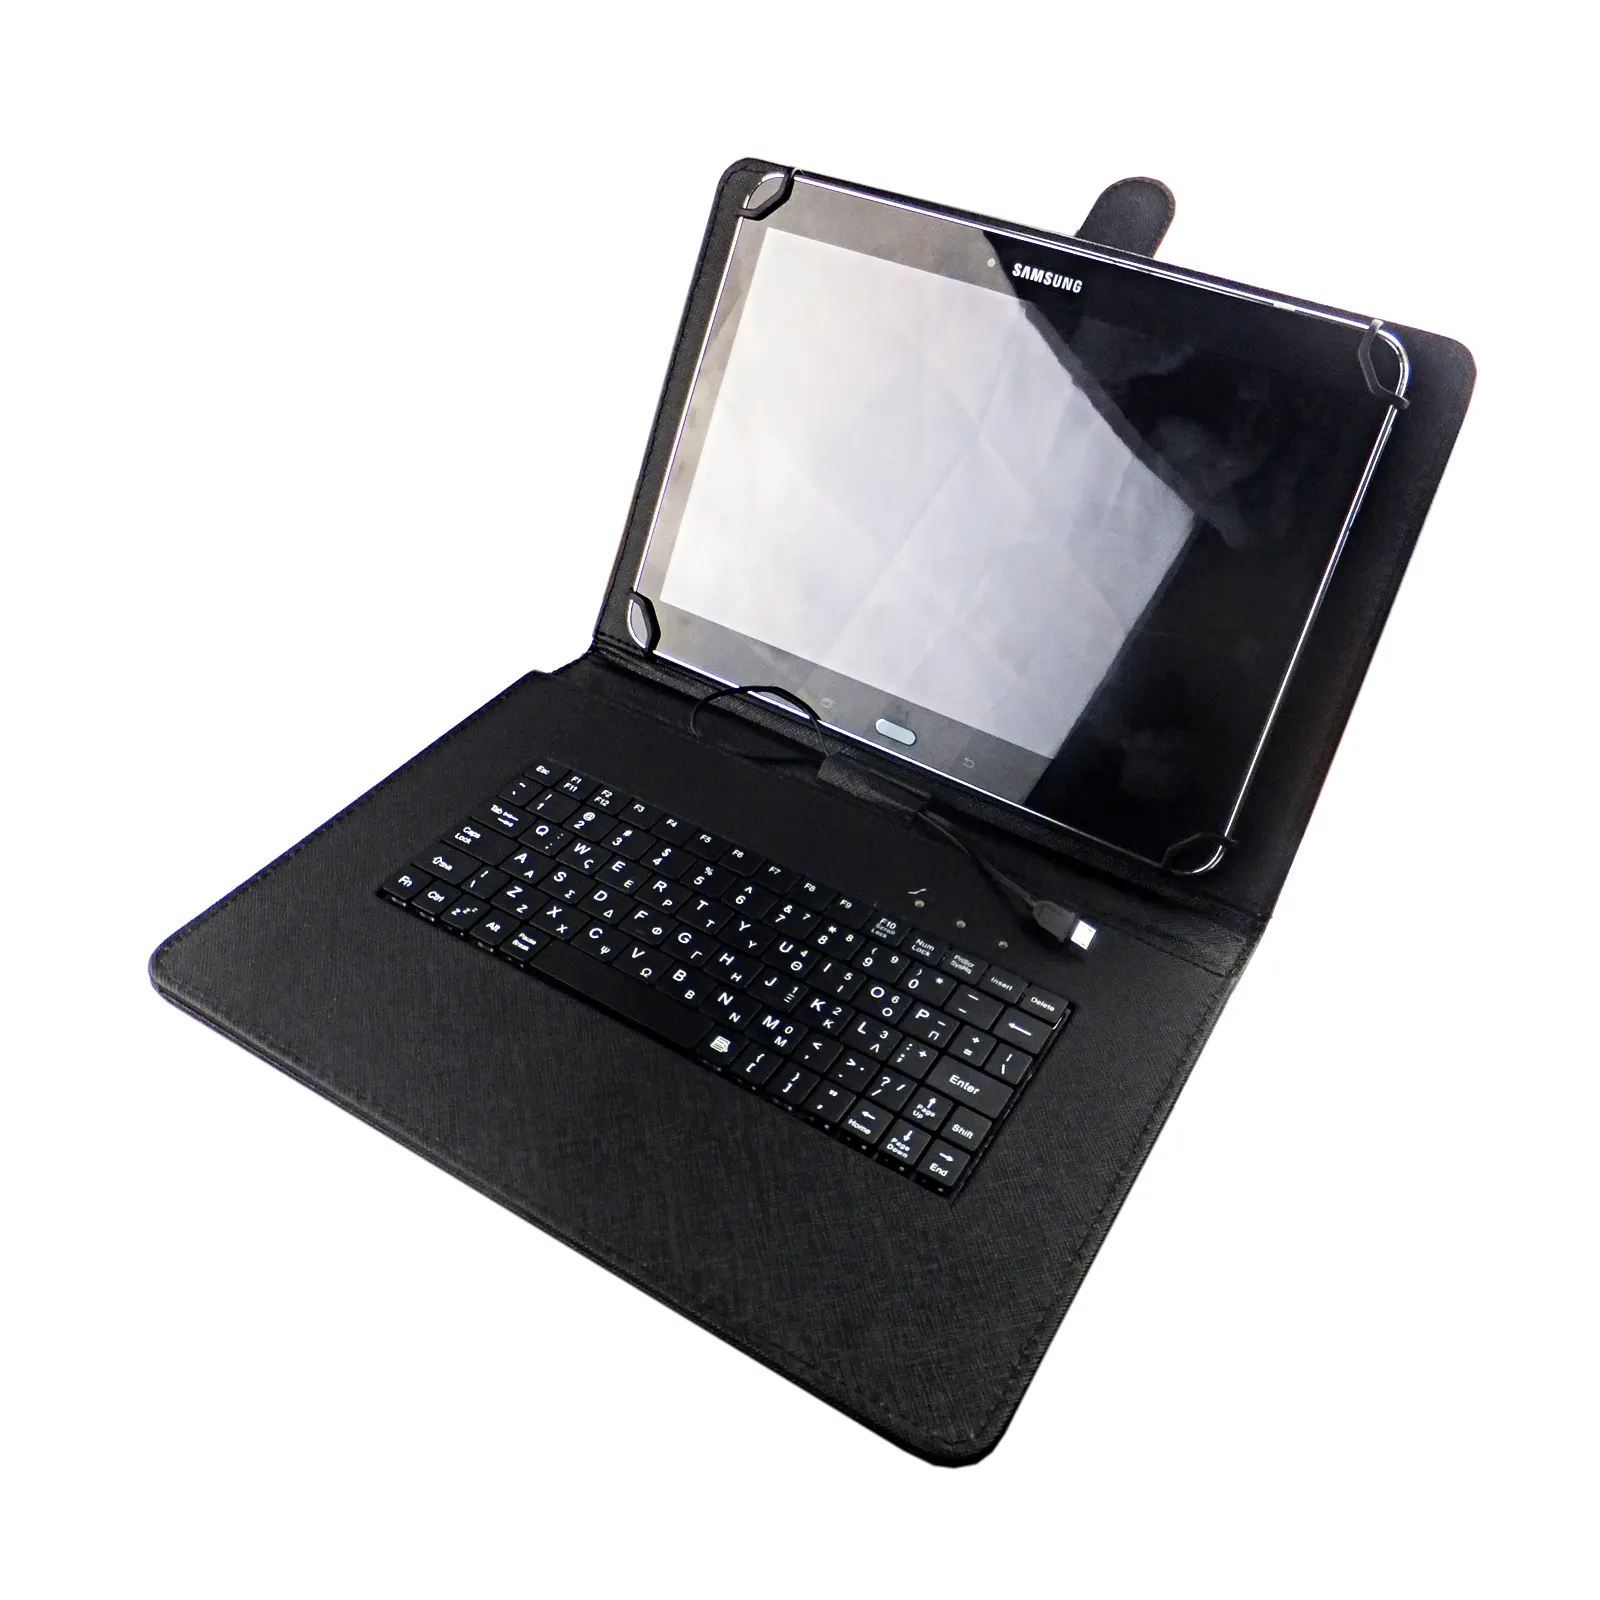 Capa para teclado com fio para tablet Samsung Galaxy Tab, preço de fábrica, tipo suporte traseiro com fivela para teclado